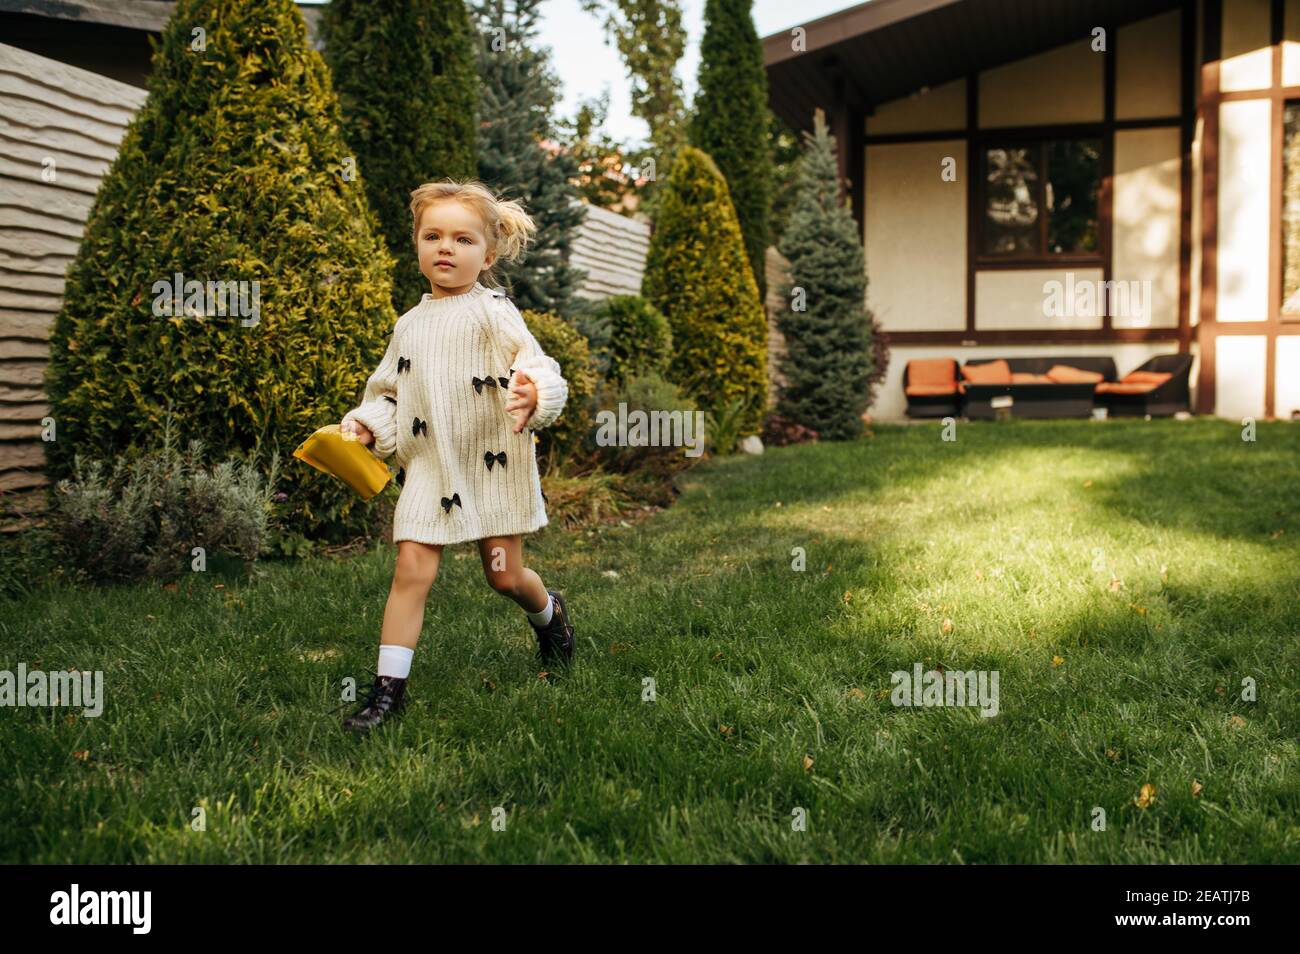 Little cheerful kid running in the garden Stock Photo